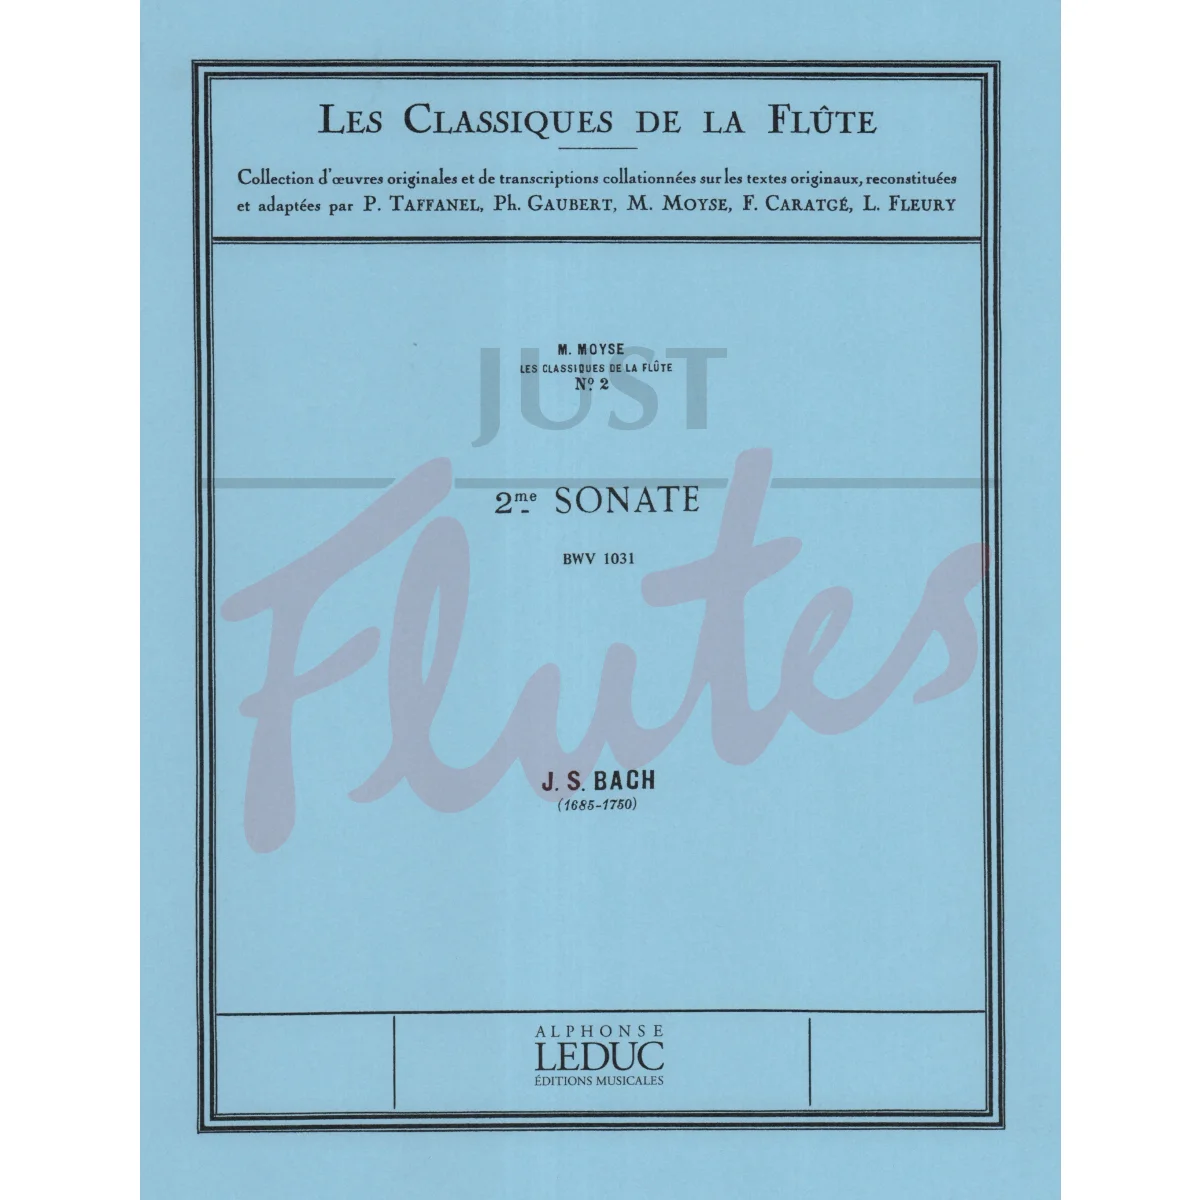 Sonata No. 2 in E flat major for Flute and Piano